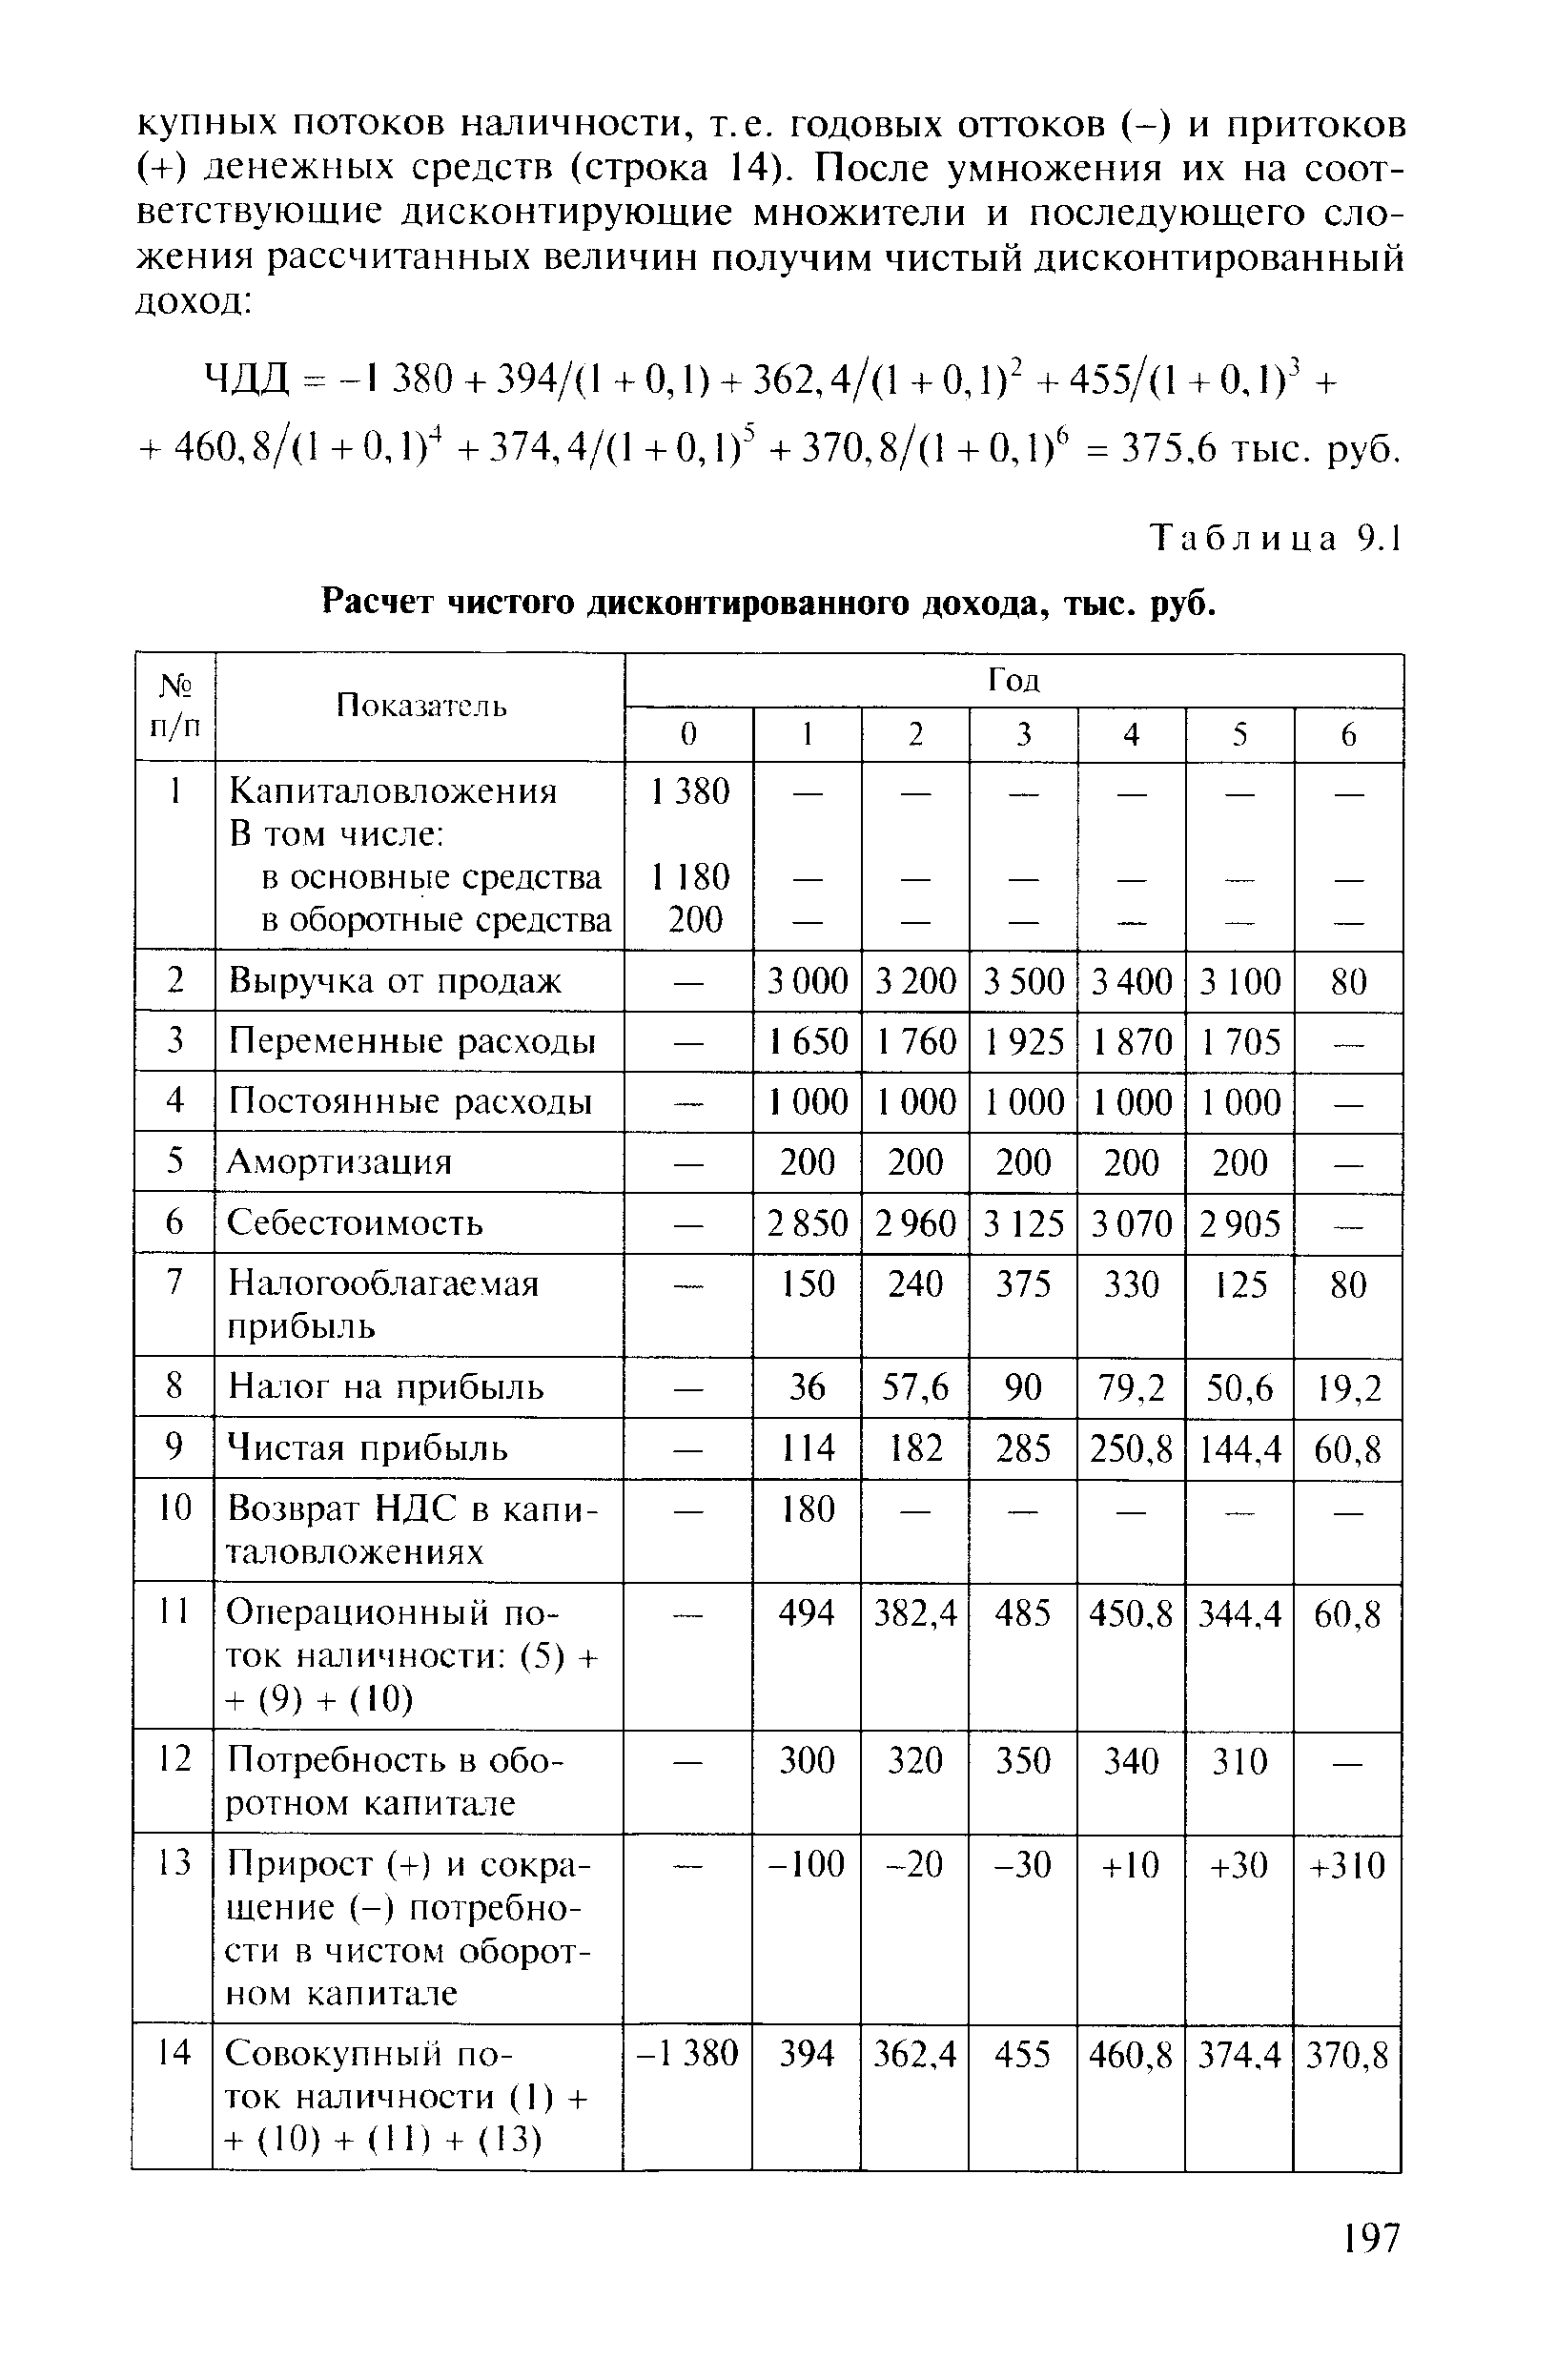 Таблица 9.1 Расчет чистого дисконтированного дохода, тыс. руб.
